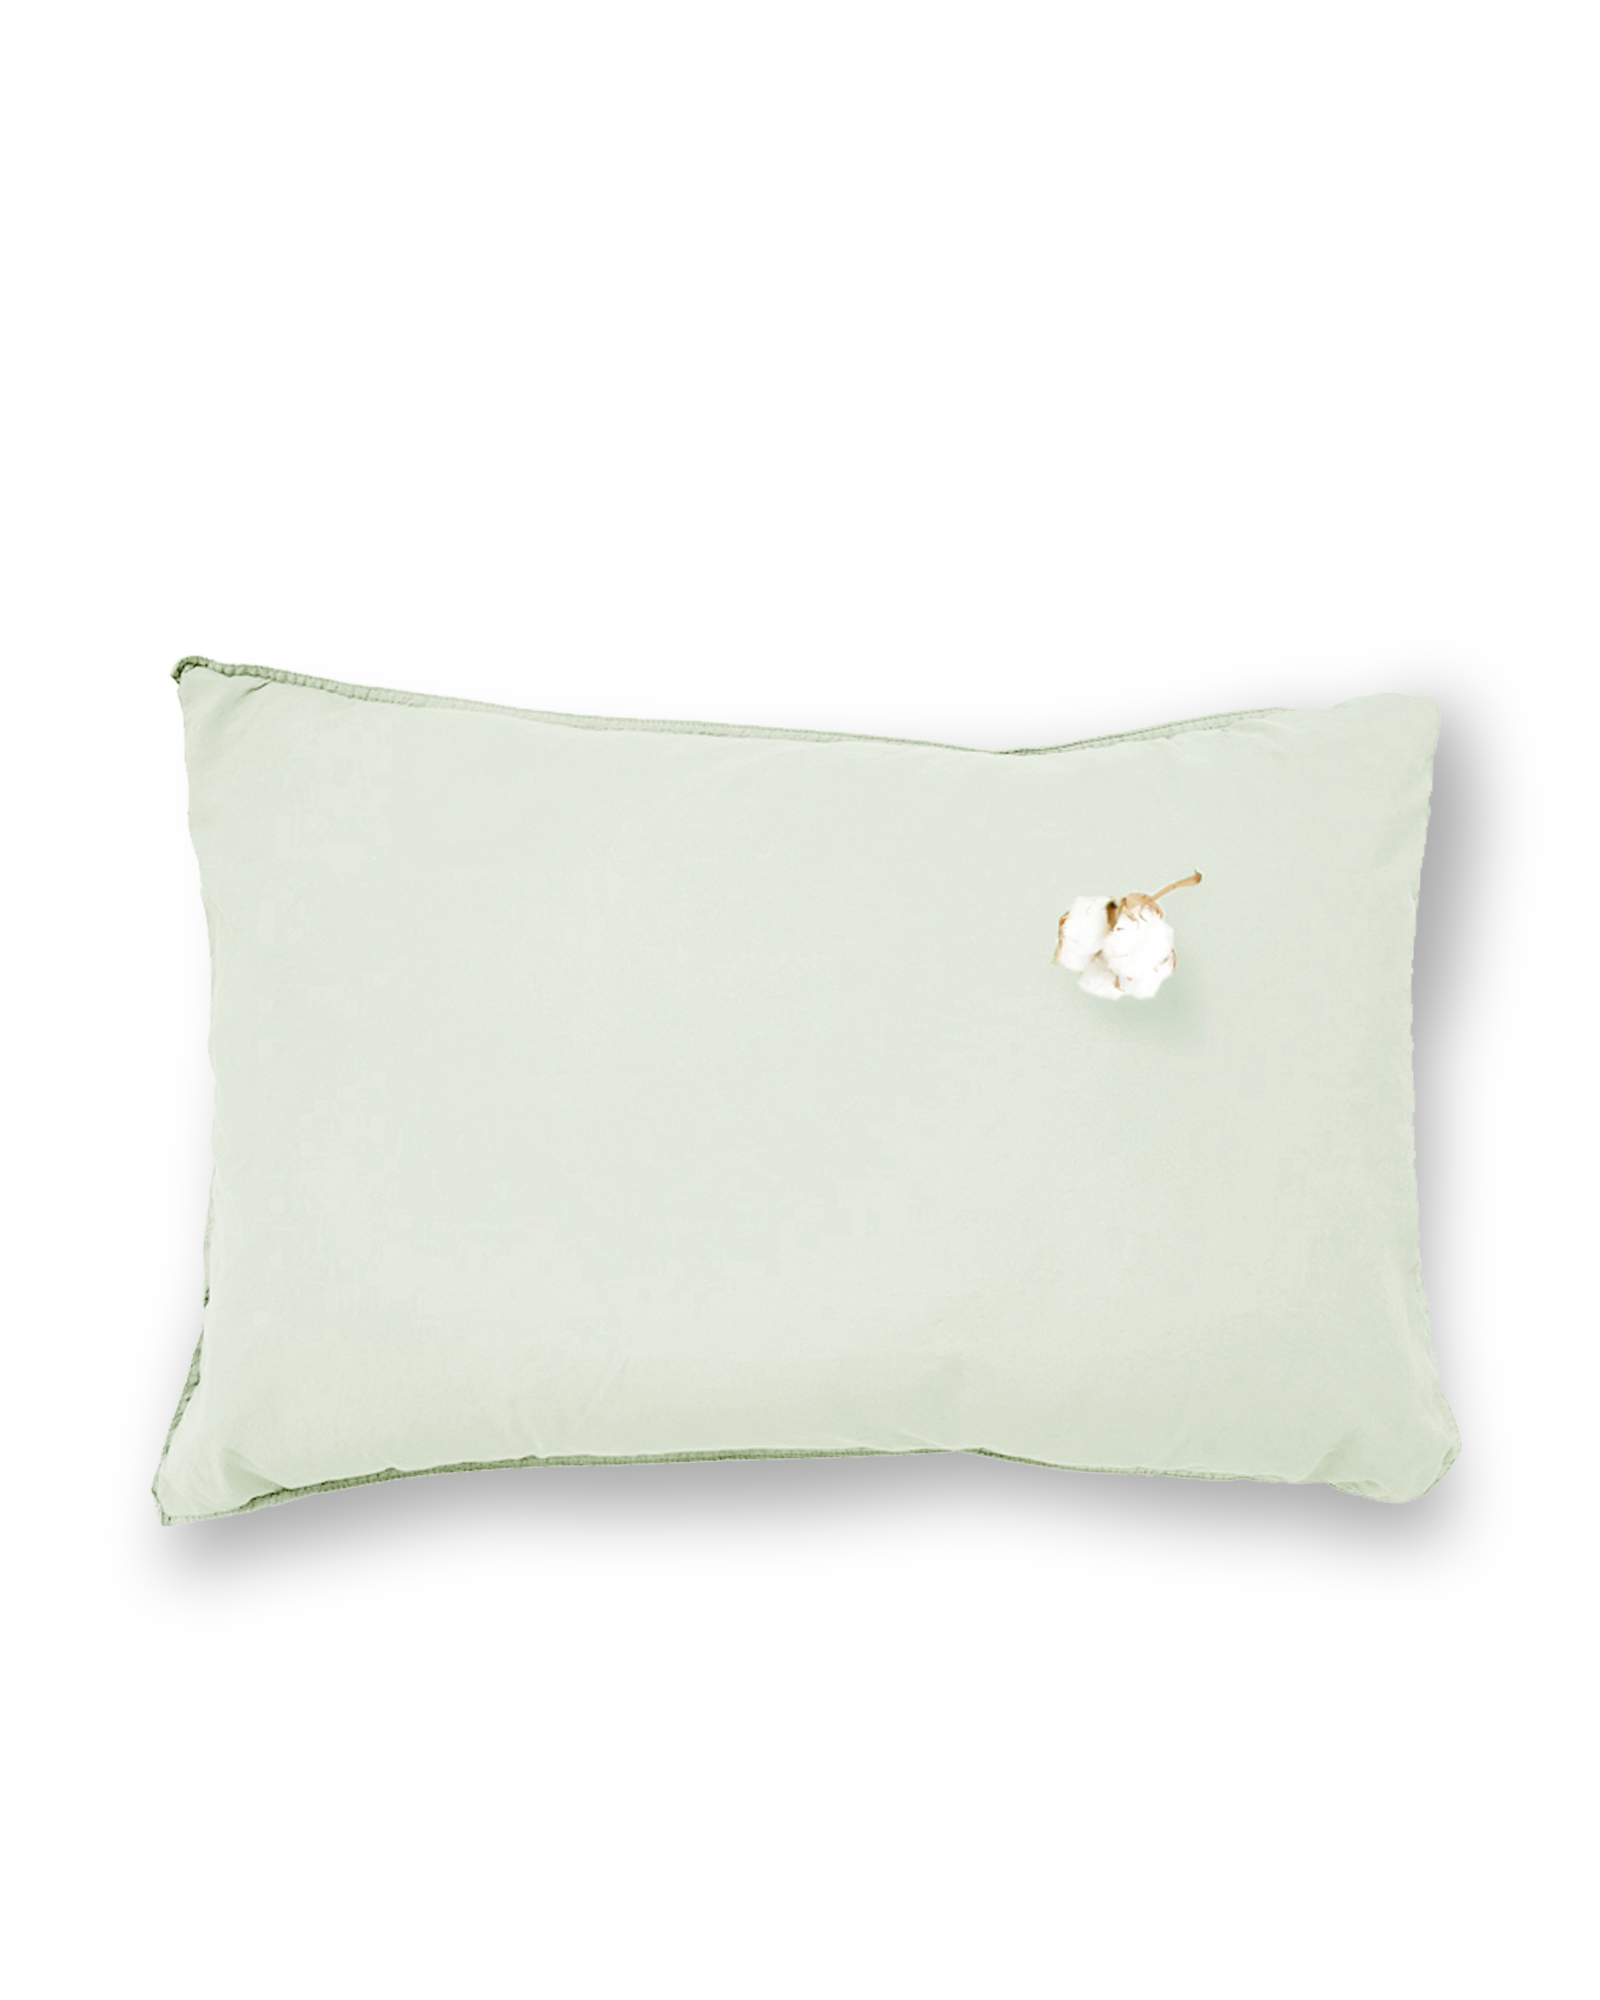 MARIE-MARIE - Cushion VINTAGE COTTON Green tea - 40x60 cm - Green tea